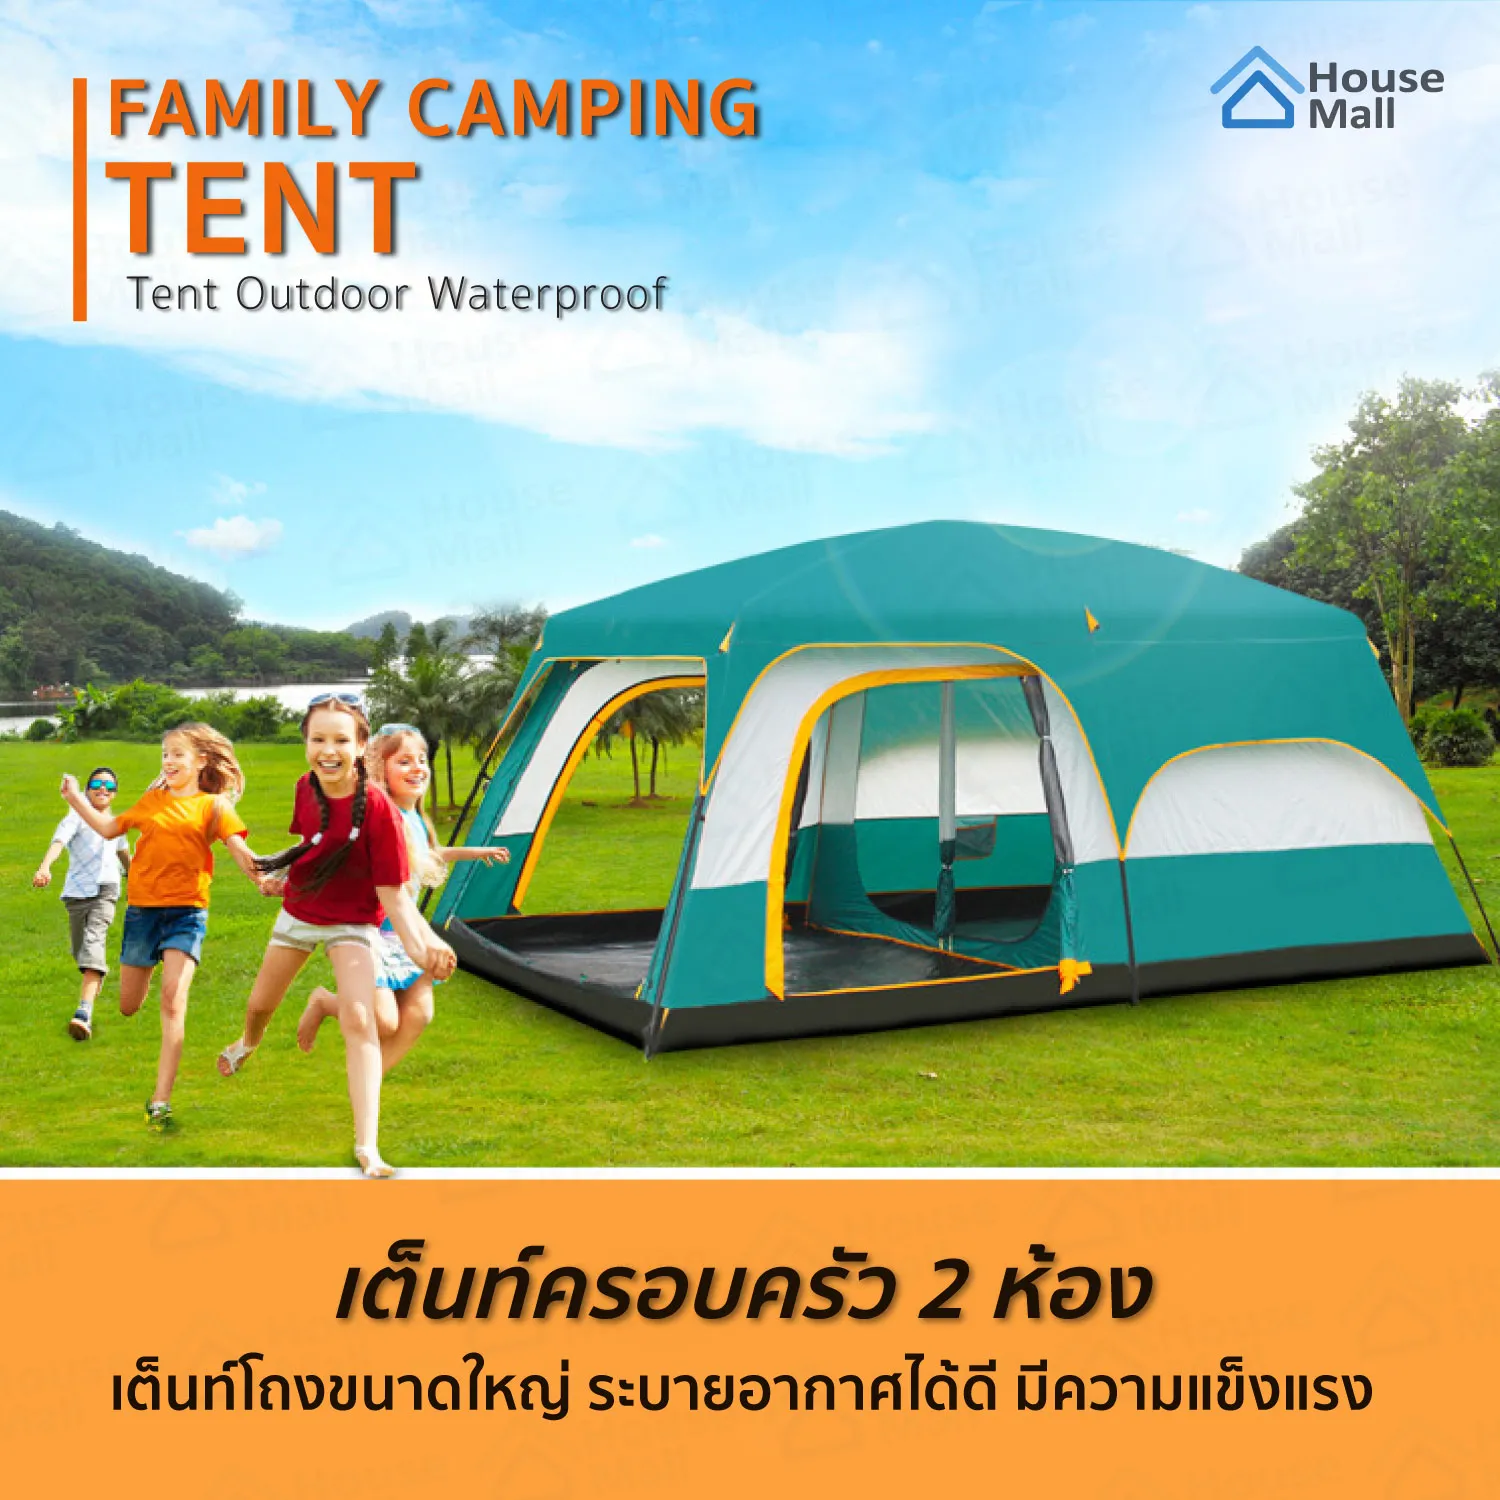 เต็นท์กันน้ำขนาดใหญ่ people tent พอสำหรับทั้งครอบครัว 8-12 คน จุดกลางเต็นท์ เต้นท์สนาม เต้นท์ เต้นท์นอน